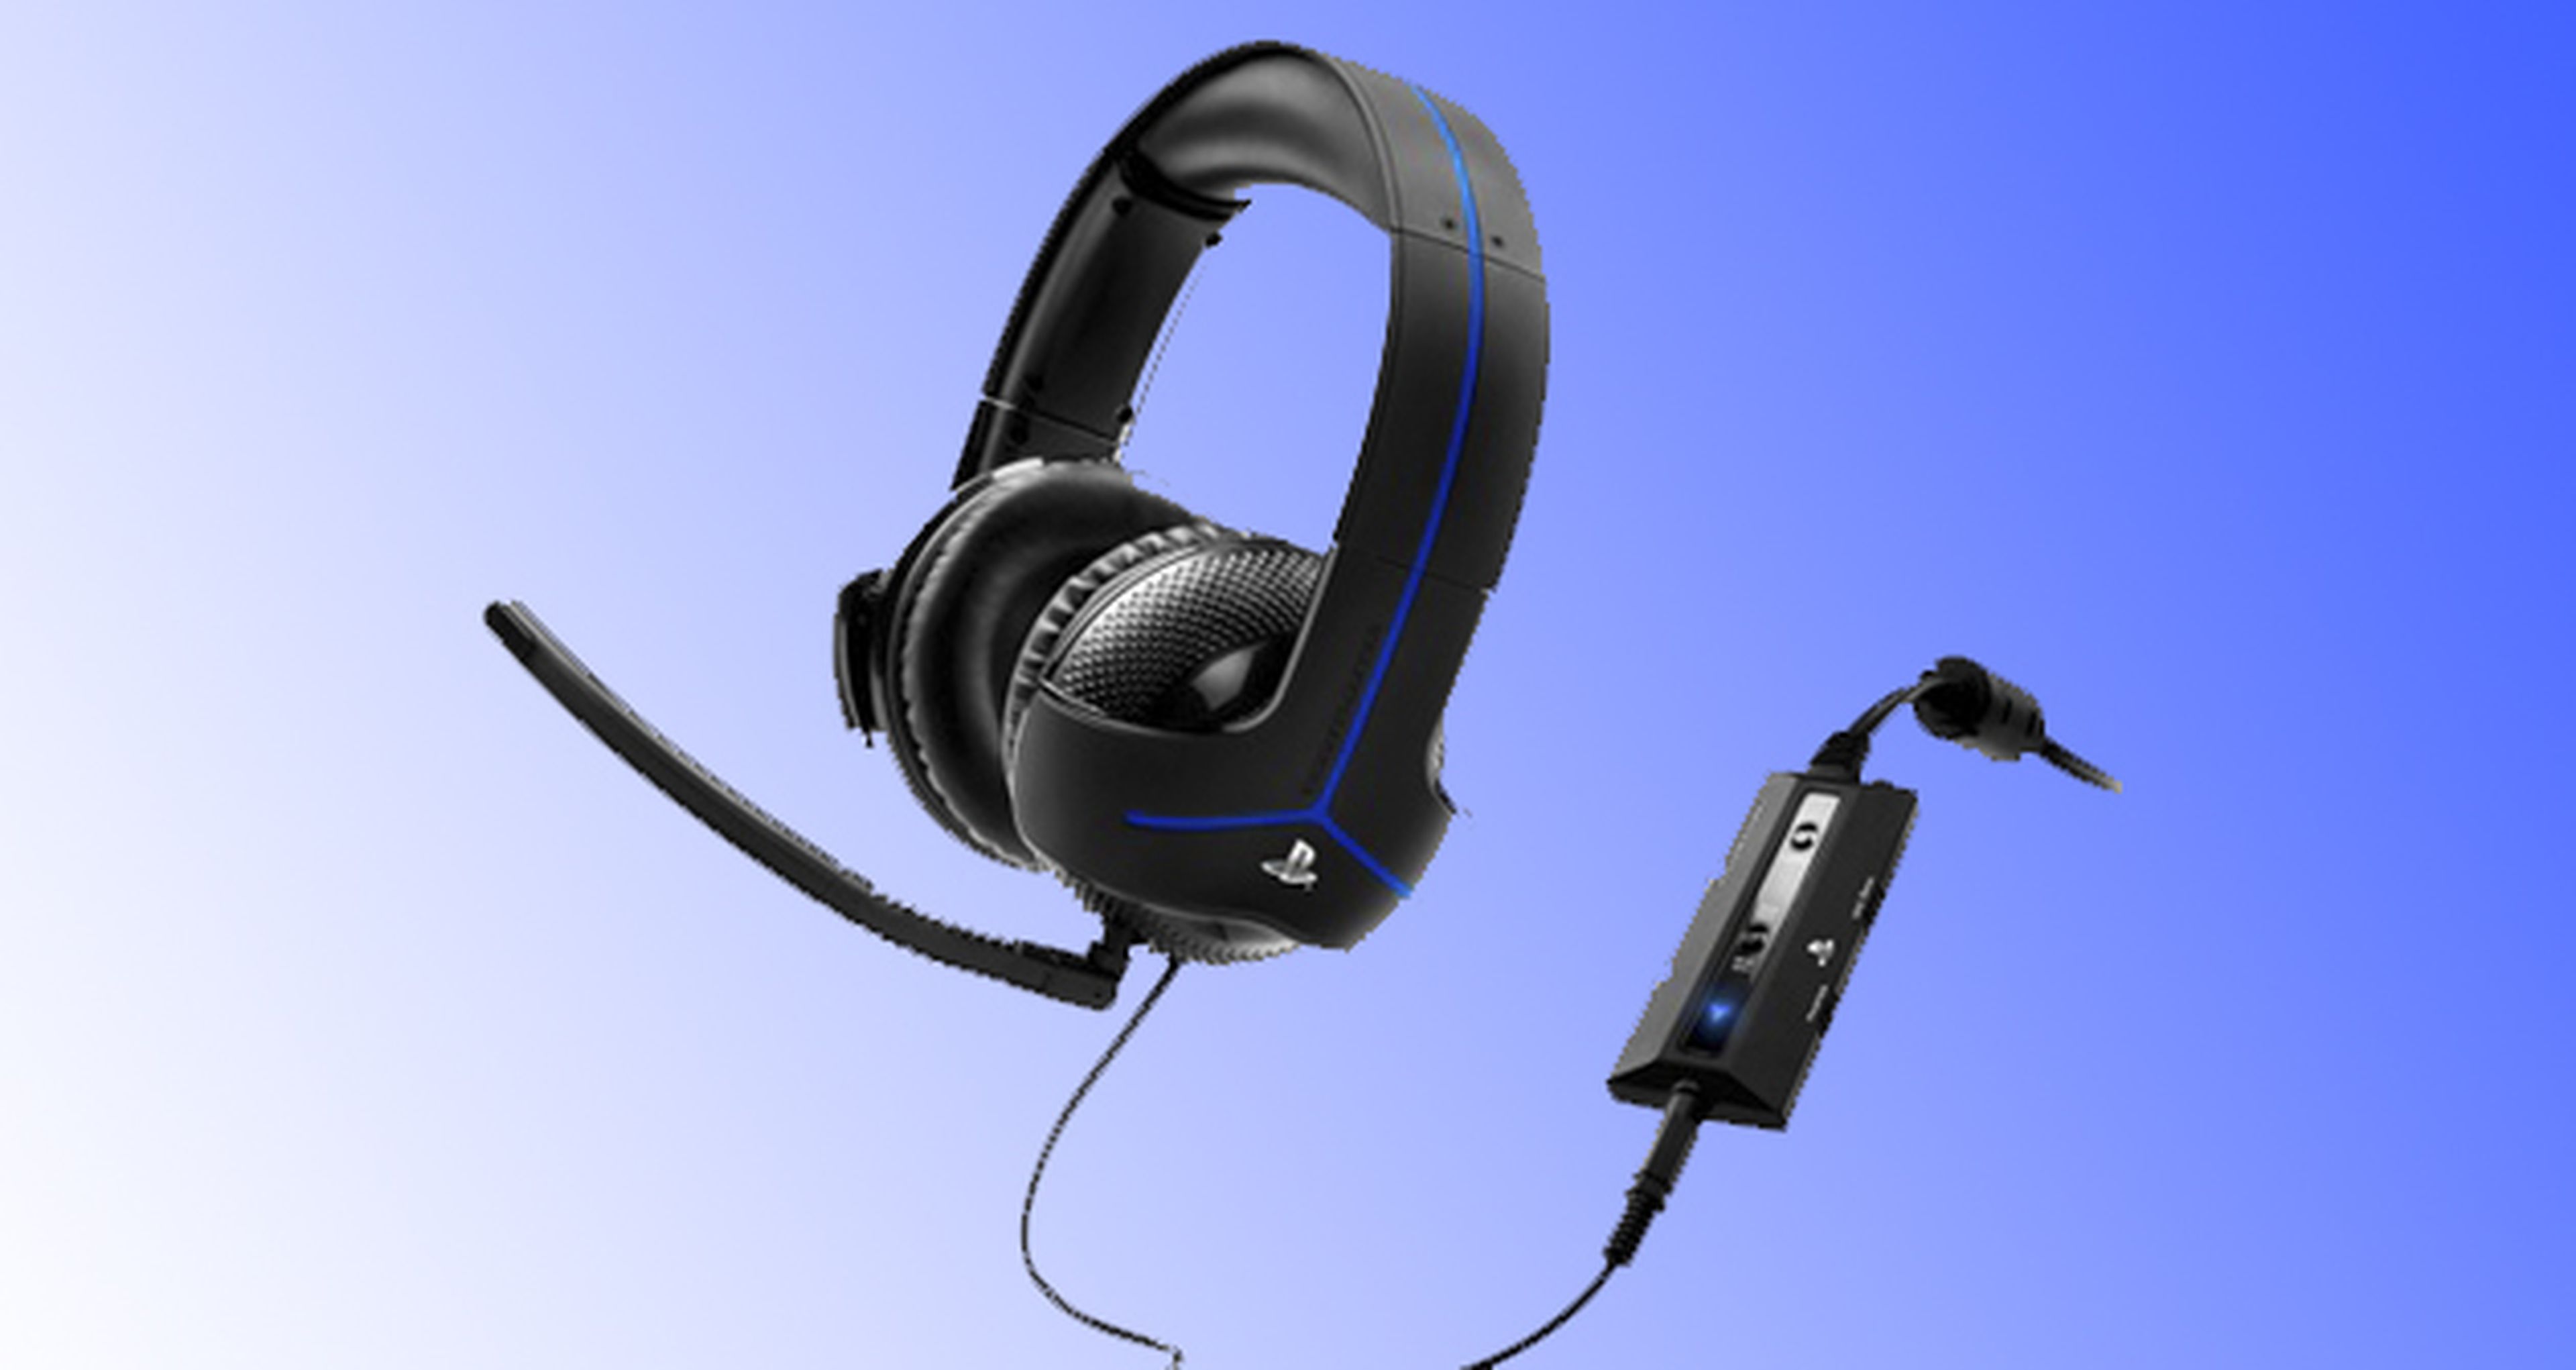 Thrustmaster Y-300P Auriculares con Micrófono para PS4/PS3